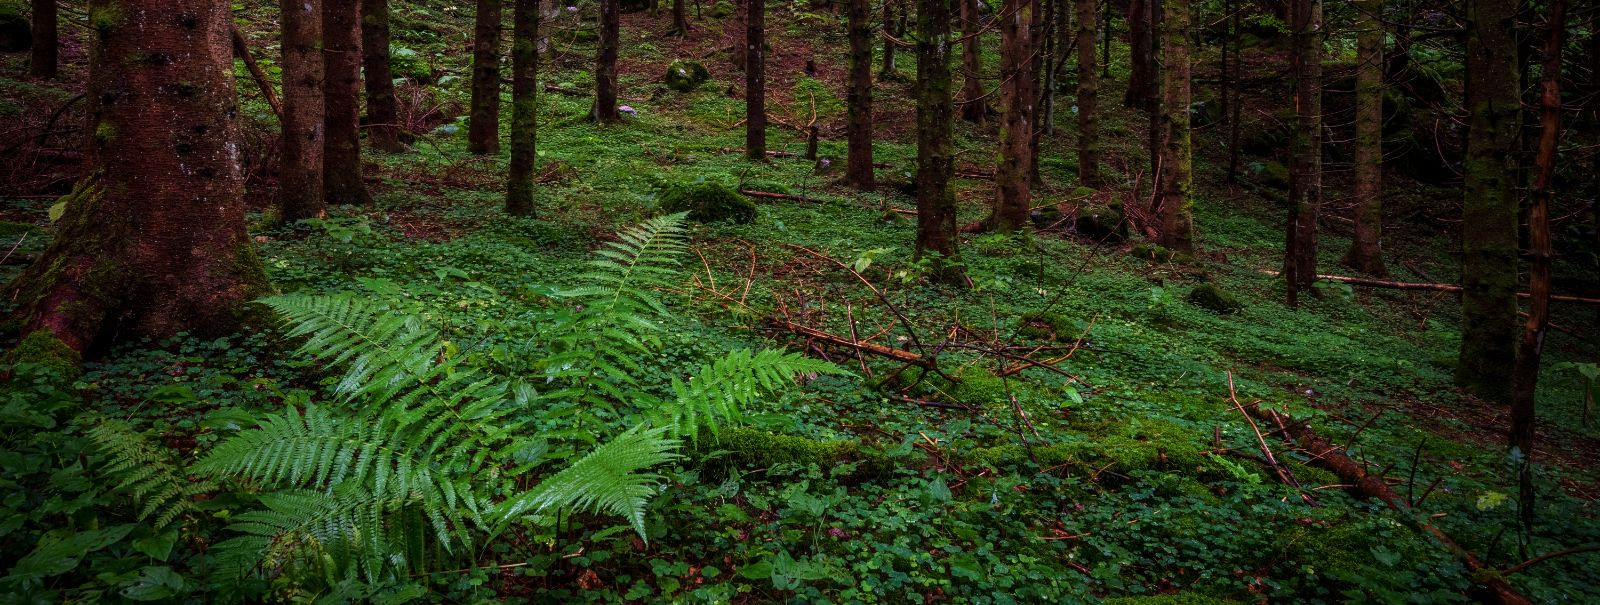 Jätkusuutlik metsandus on metsaressursside majandamise viis, ...